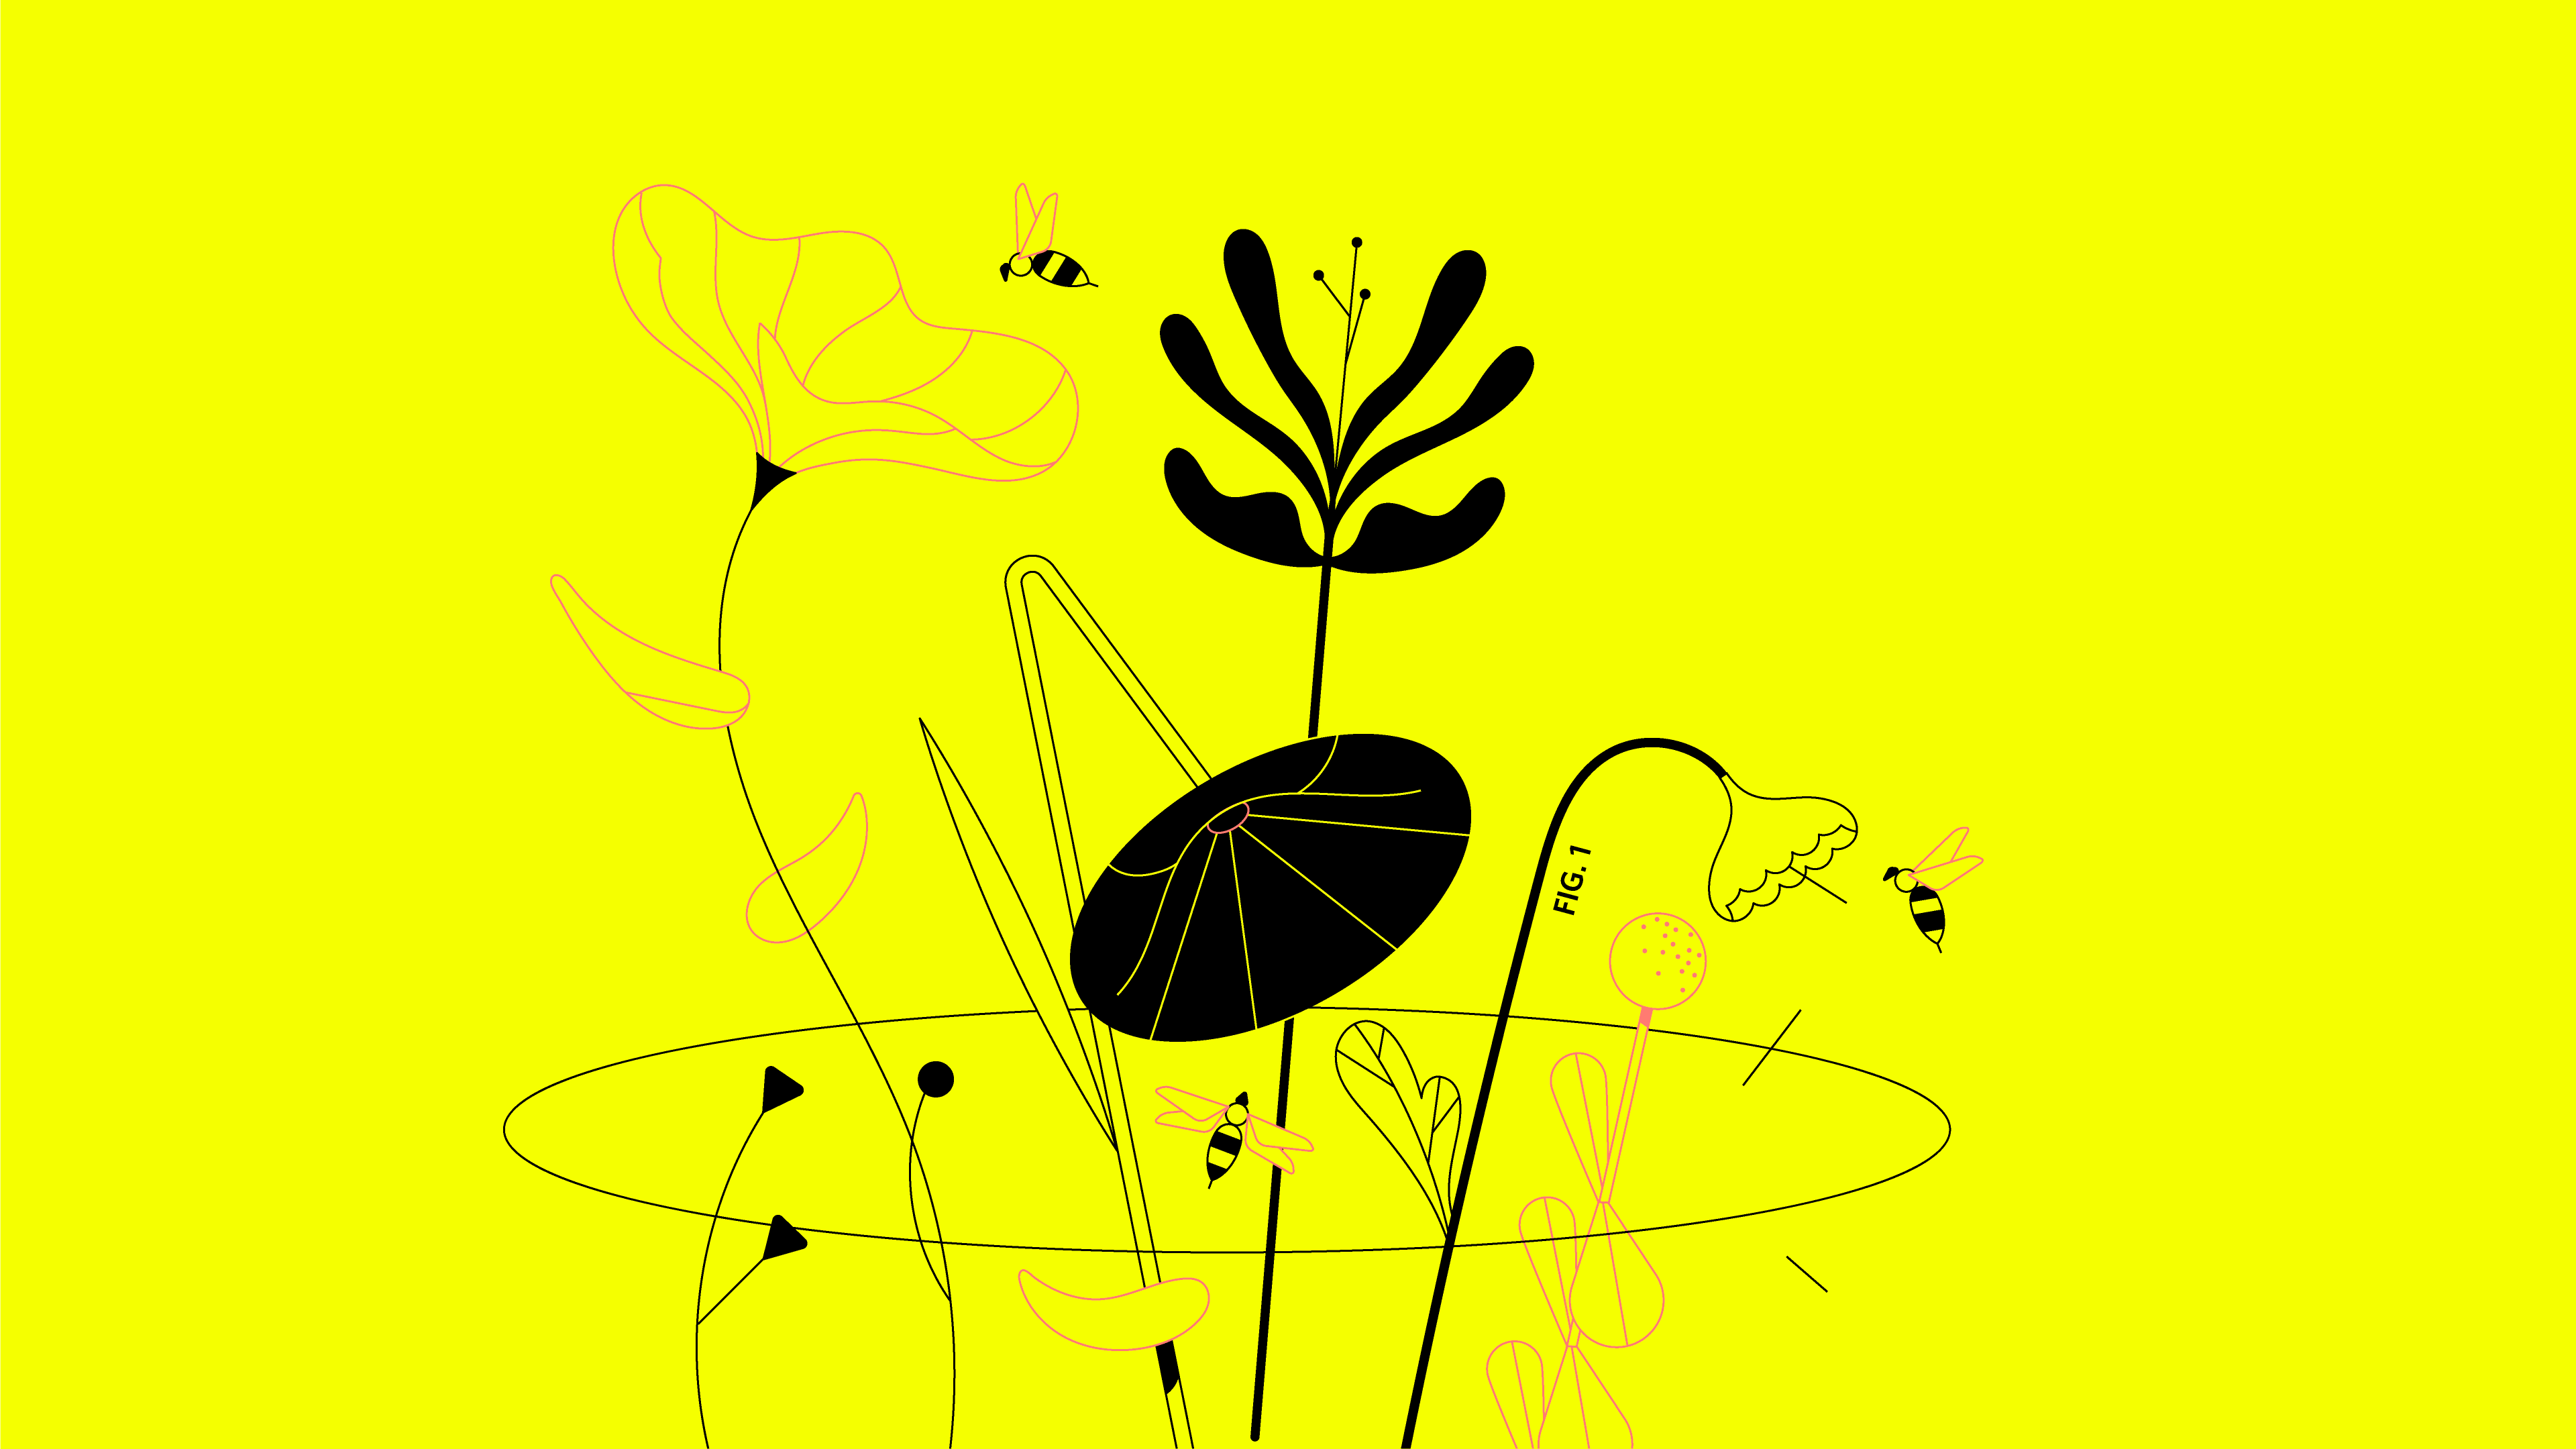 Recuadro amarillo de una animación de flores dibujadas 